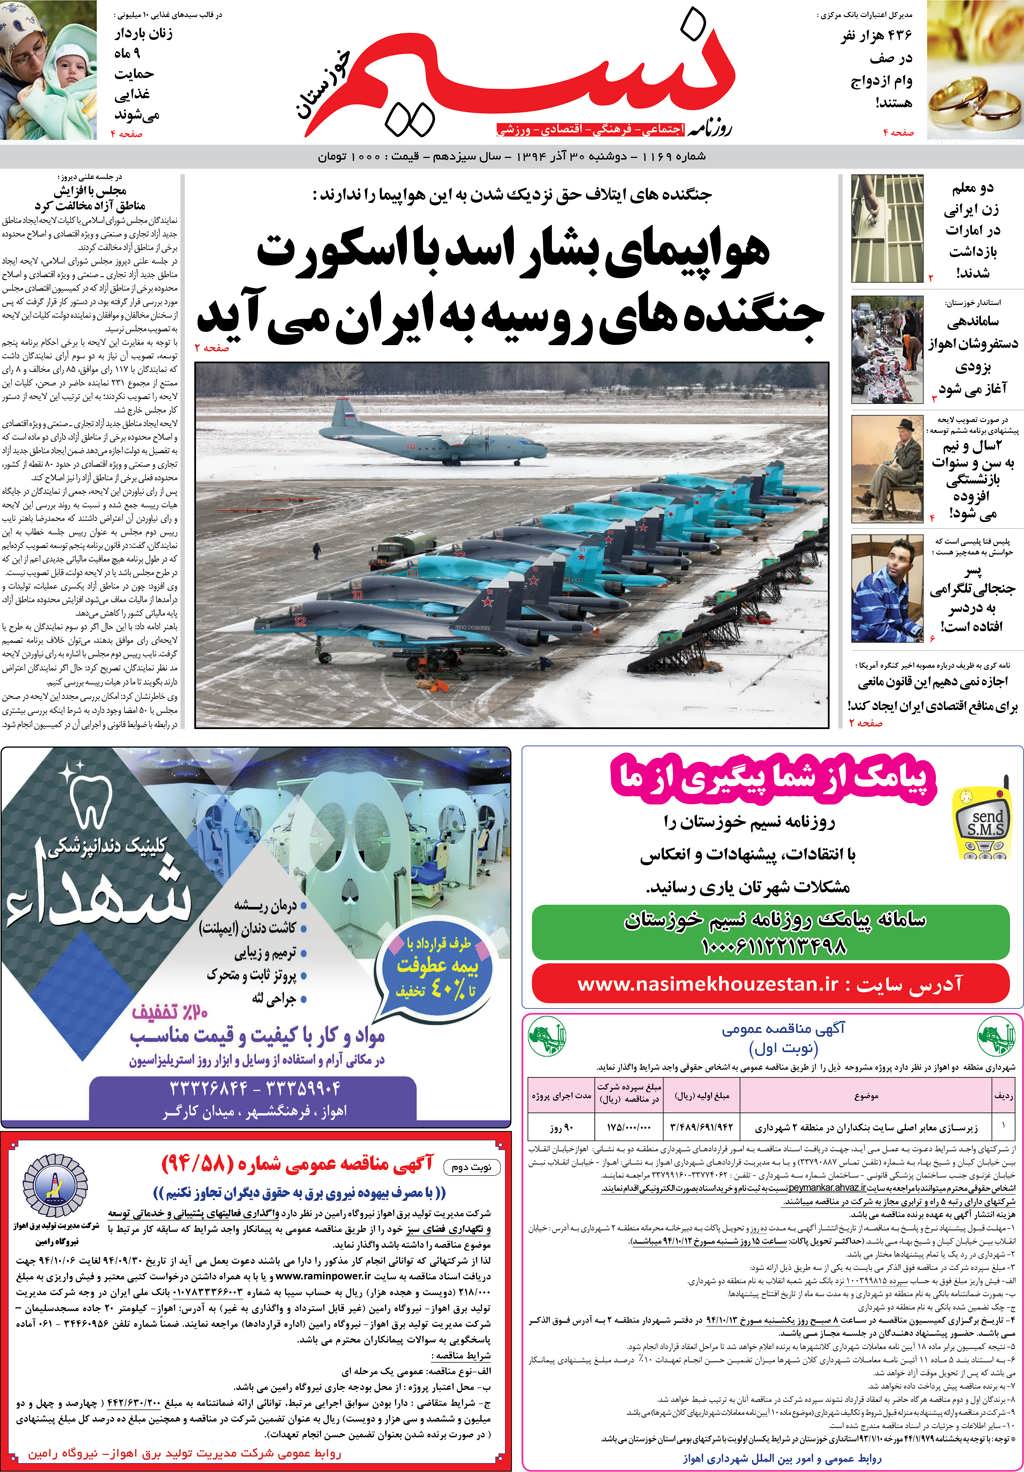 صفحه اصلی روزنامه نسیم شماره 1169